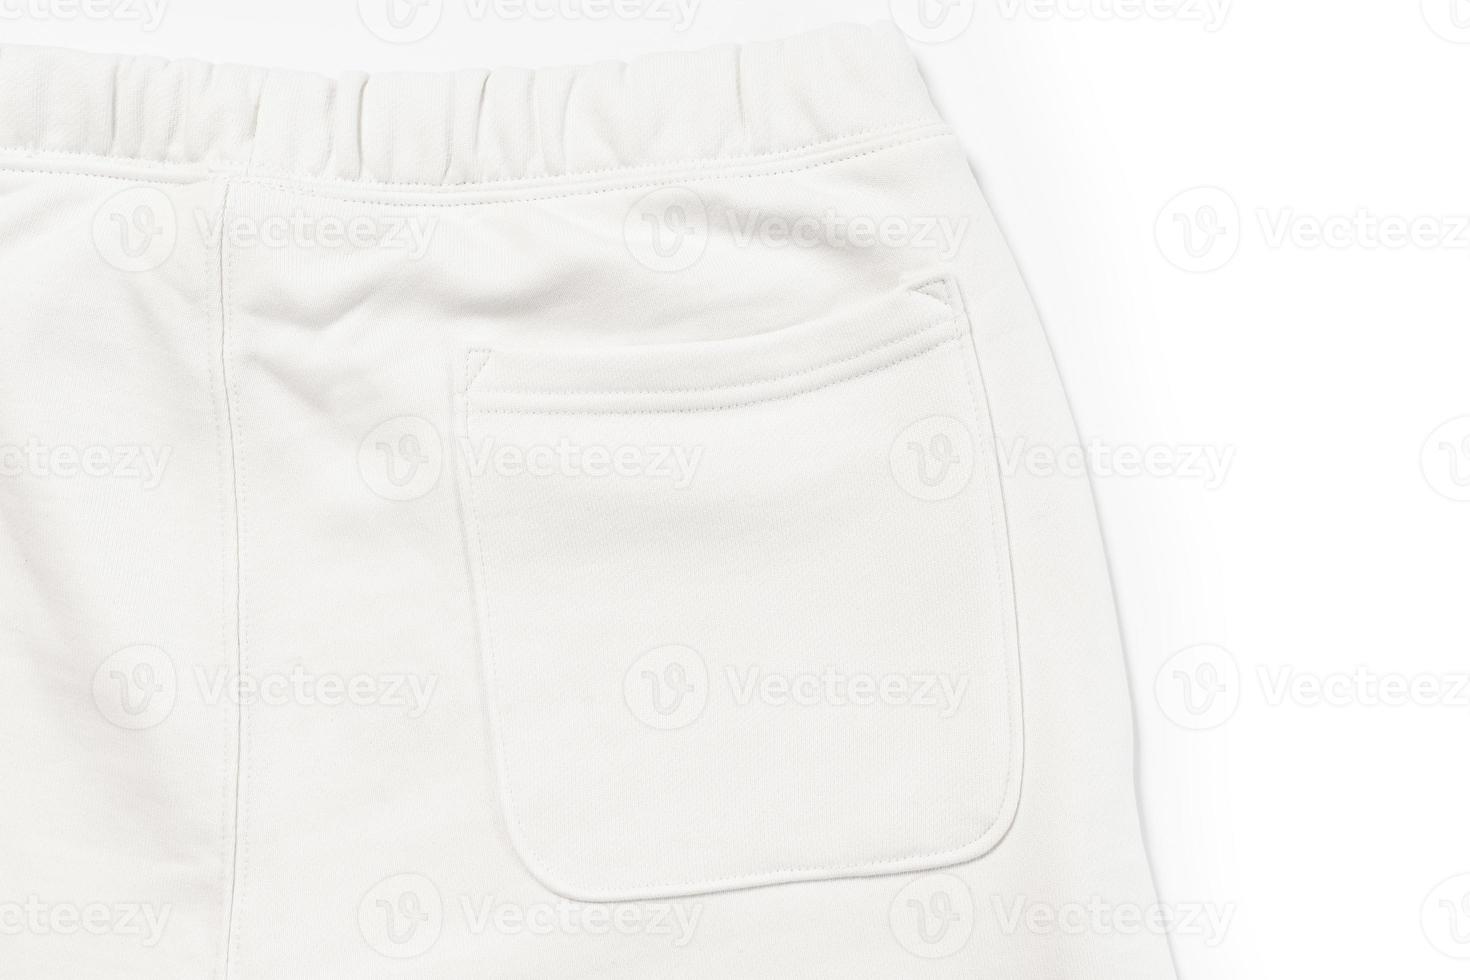 katoen kleding stof structuur van een wit joggingbroek foto